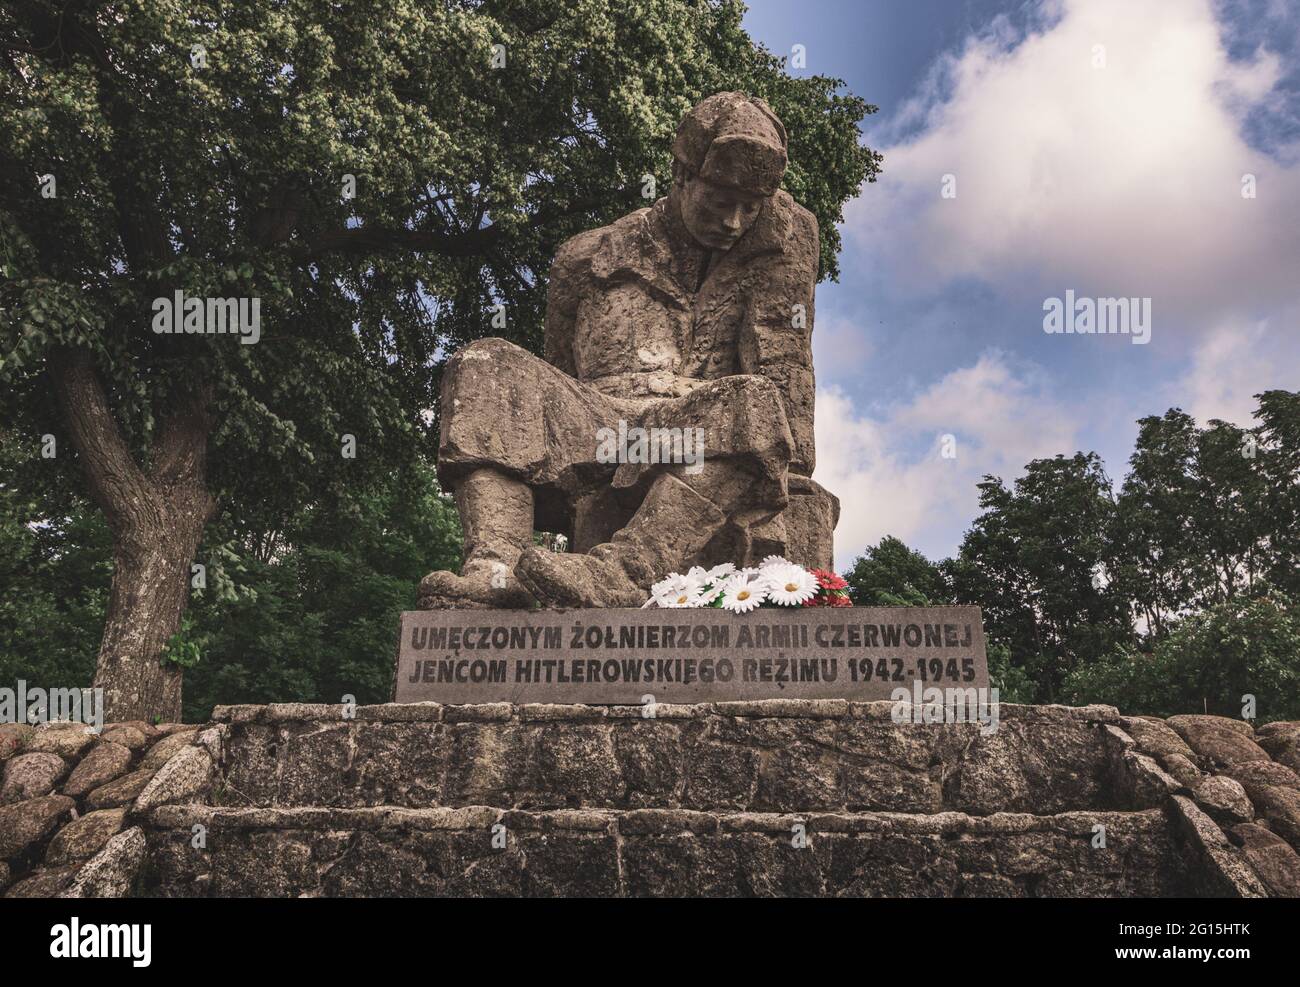 Mahnmal Denkmal Statue aus Stein von einem einsamen Soldaten aus dem zweiten Weltkrieg in Polen - Sehenswürdigkeit Monument Plastik im Sommer Stock Photo